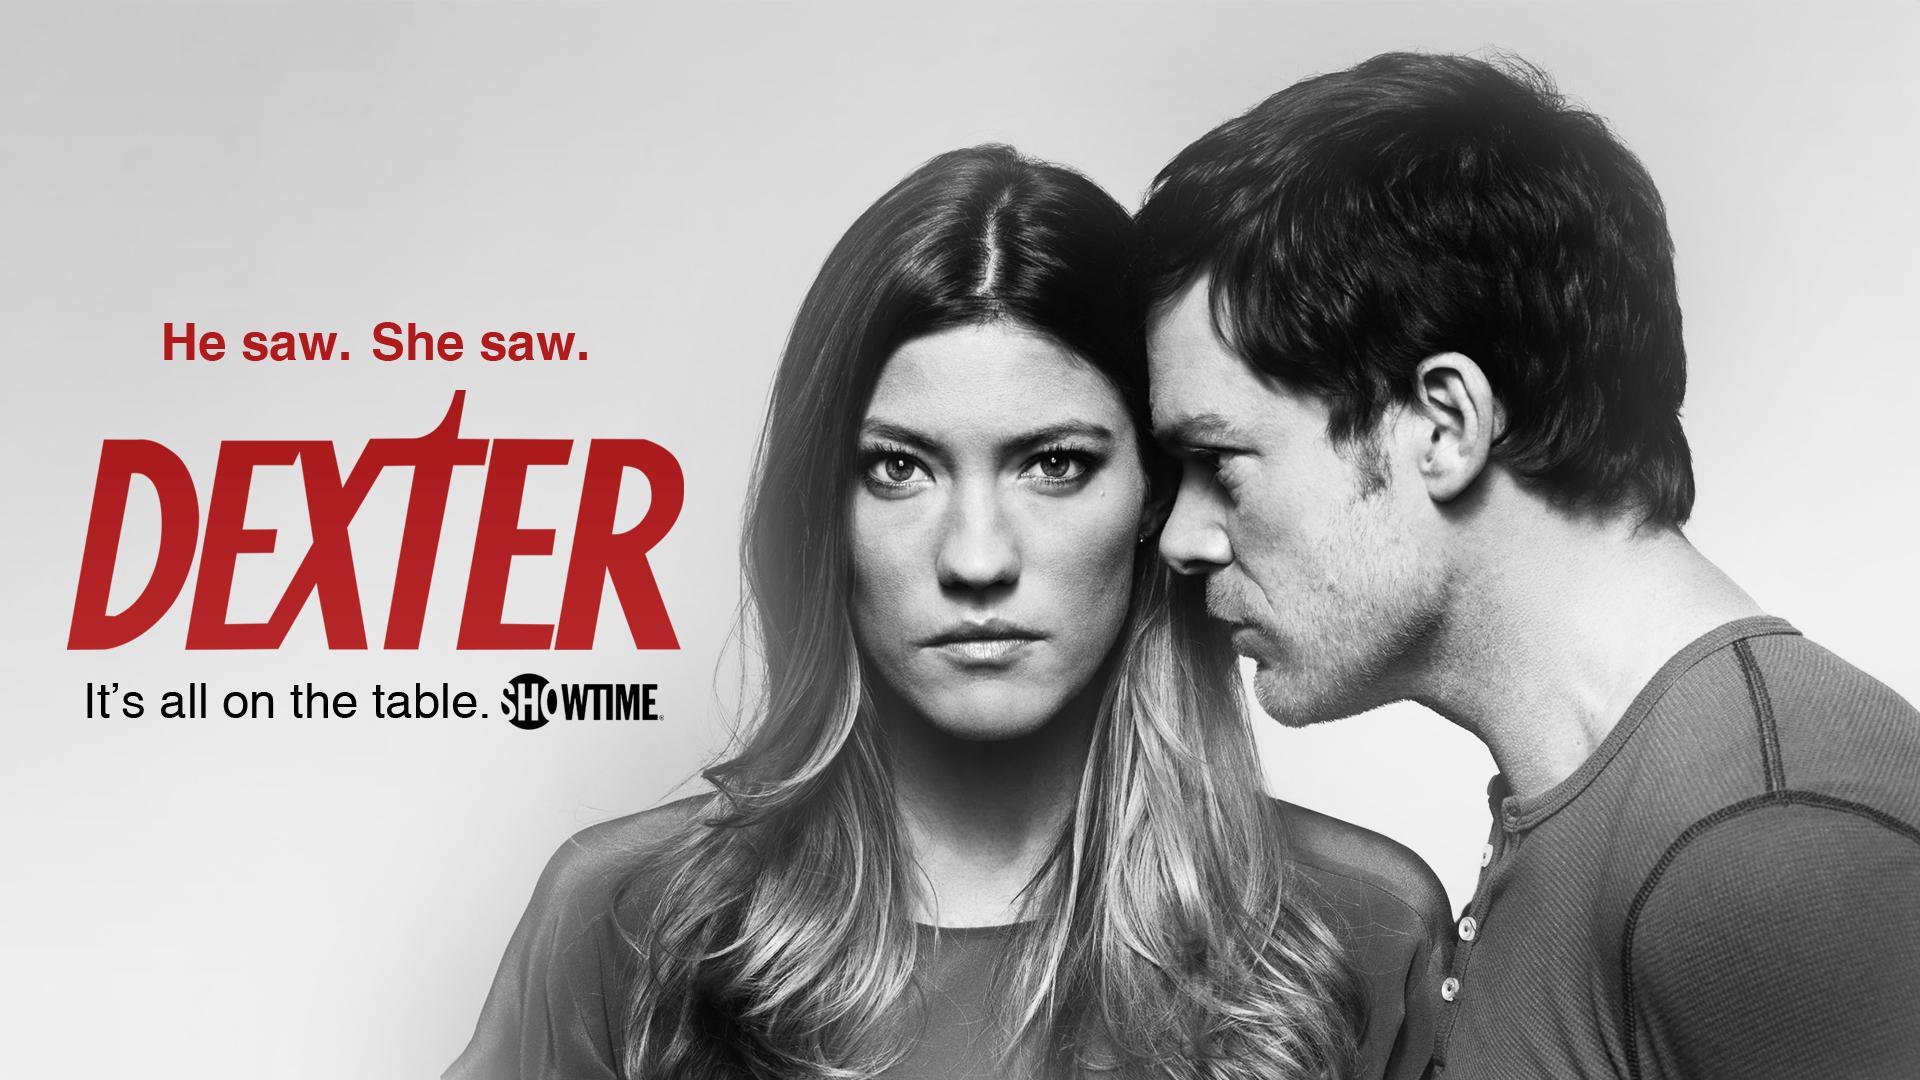 Dexter (TV Series) - Wallpapers